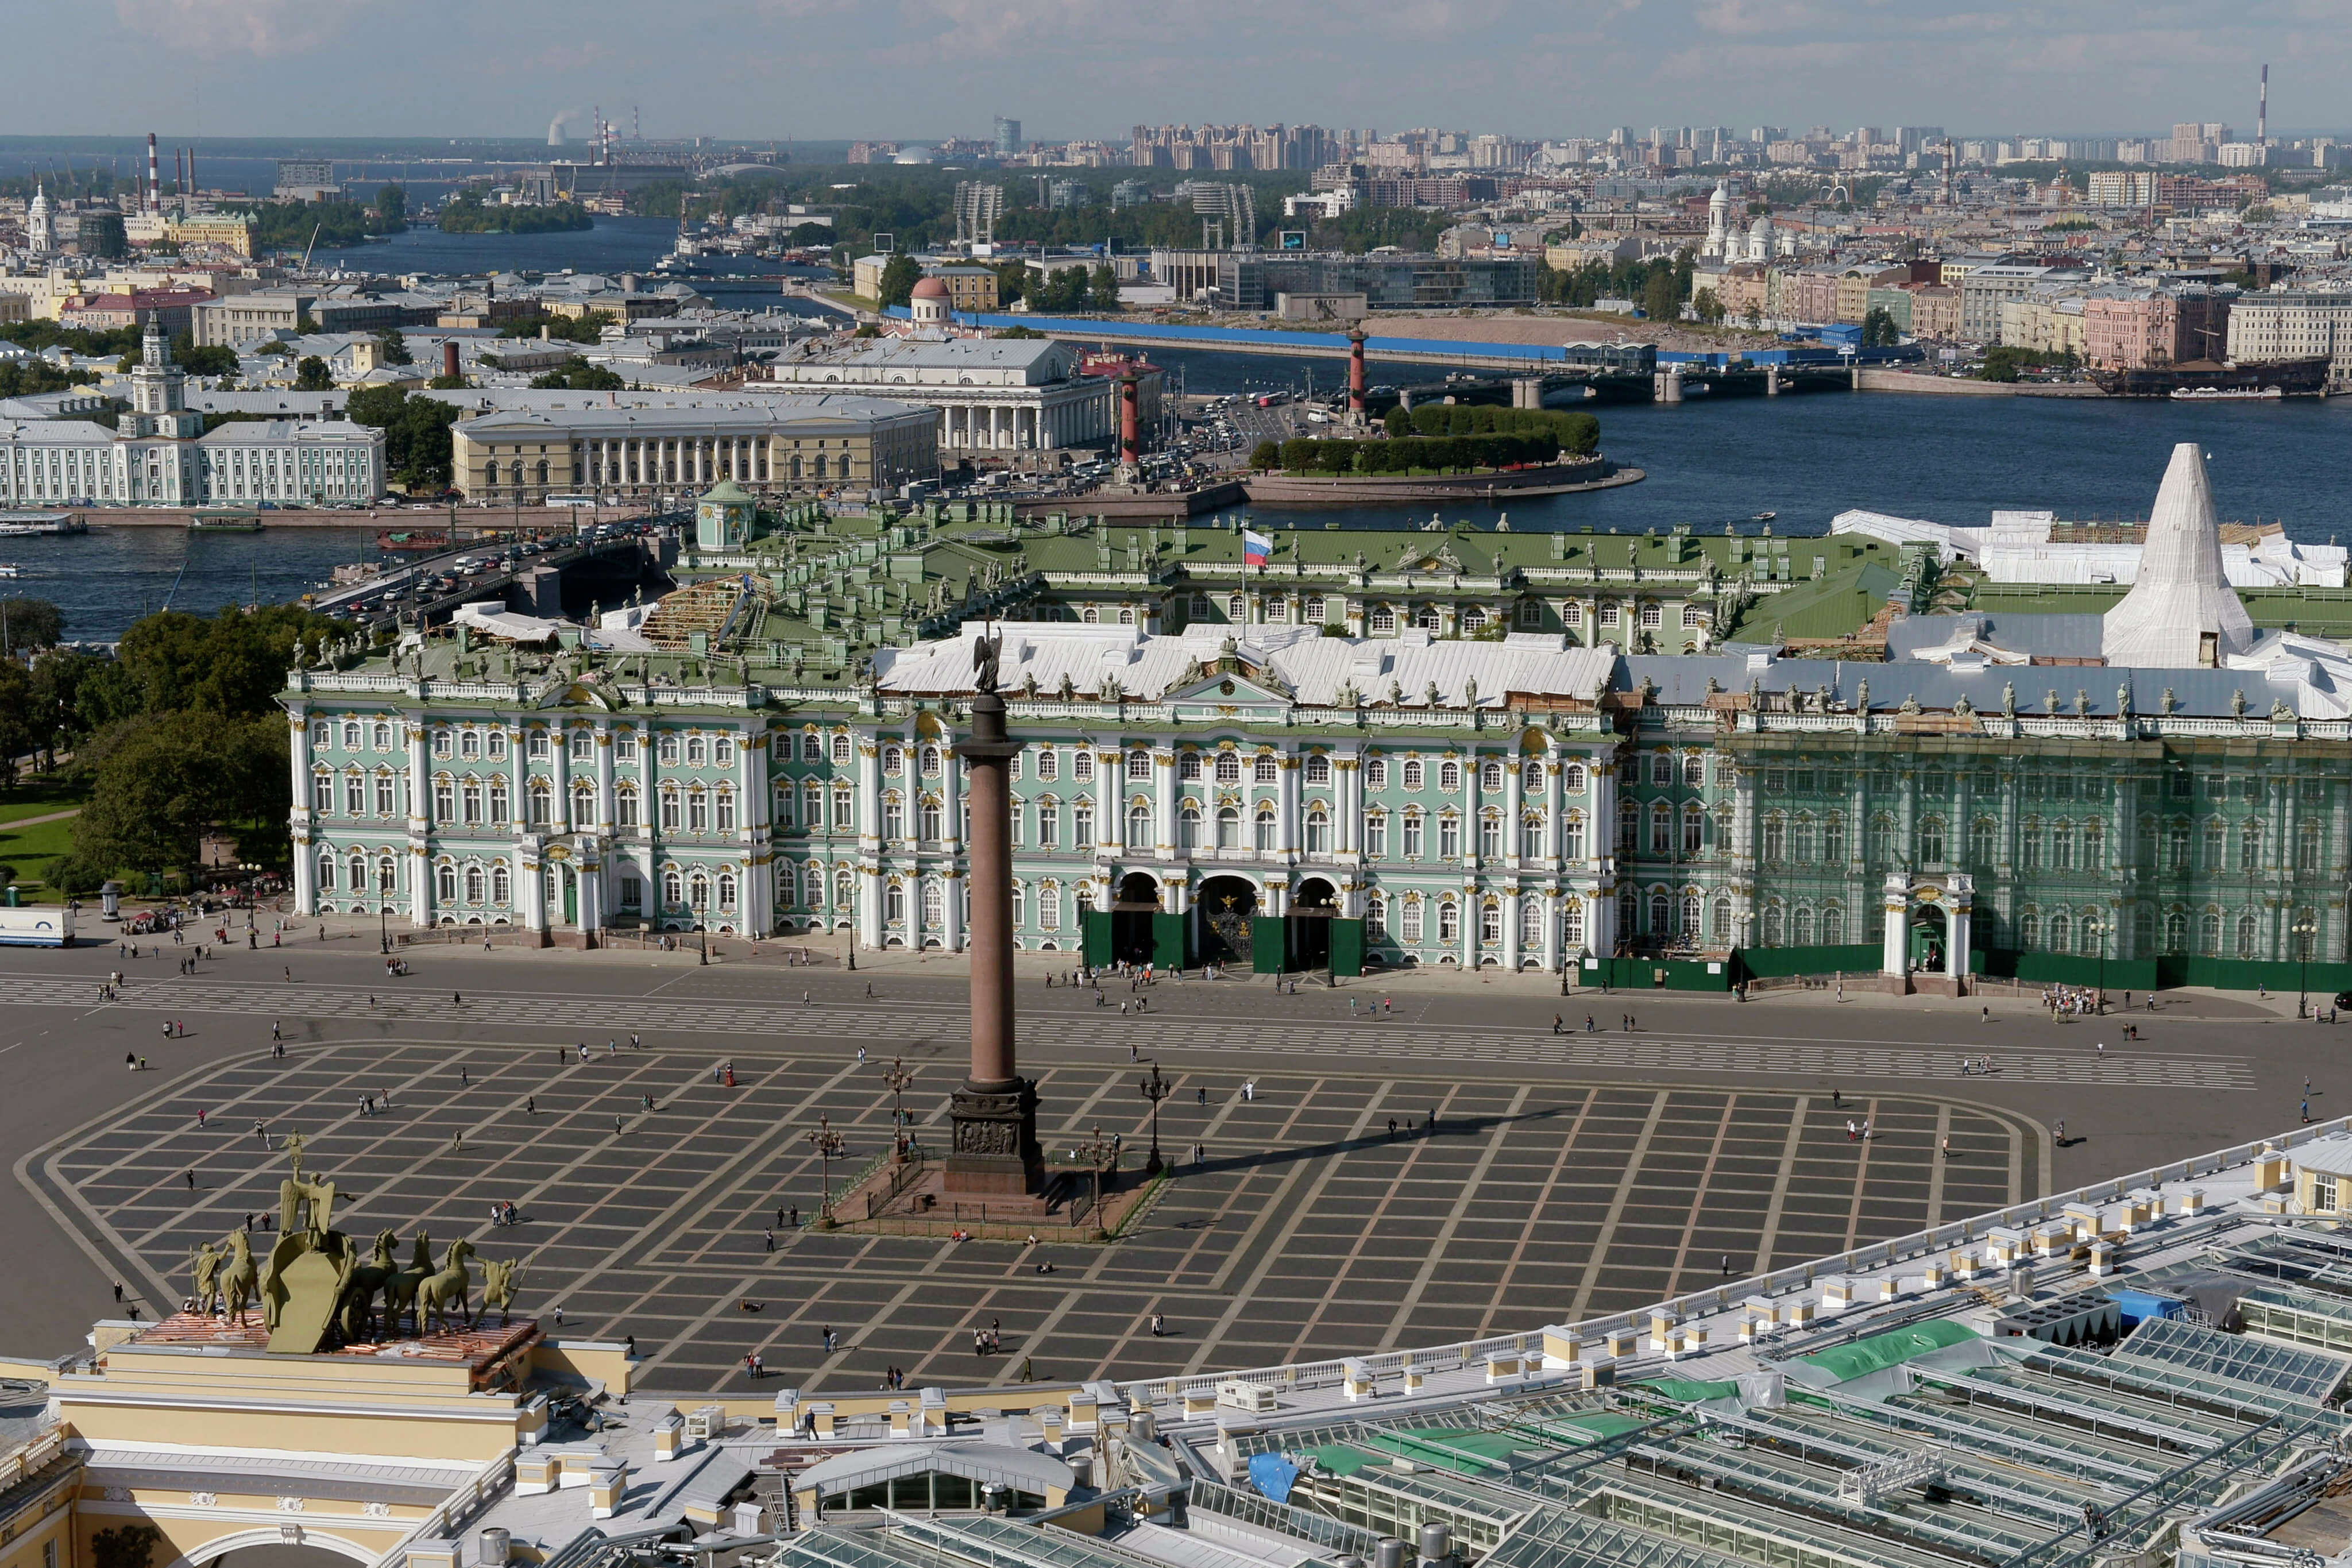 Панорамный снимок, в центре - Александровская колонна.